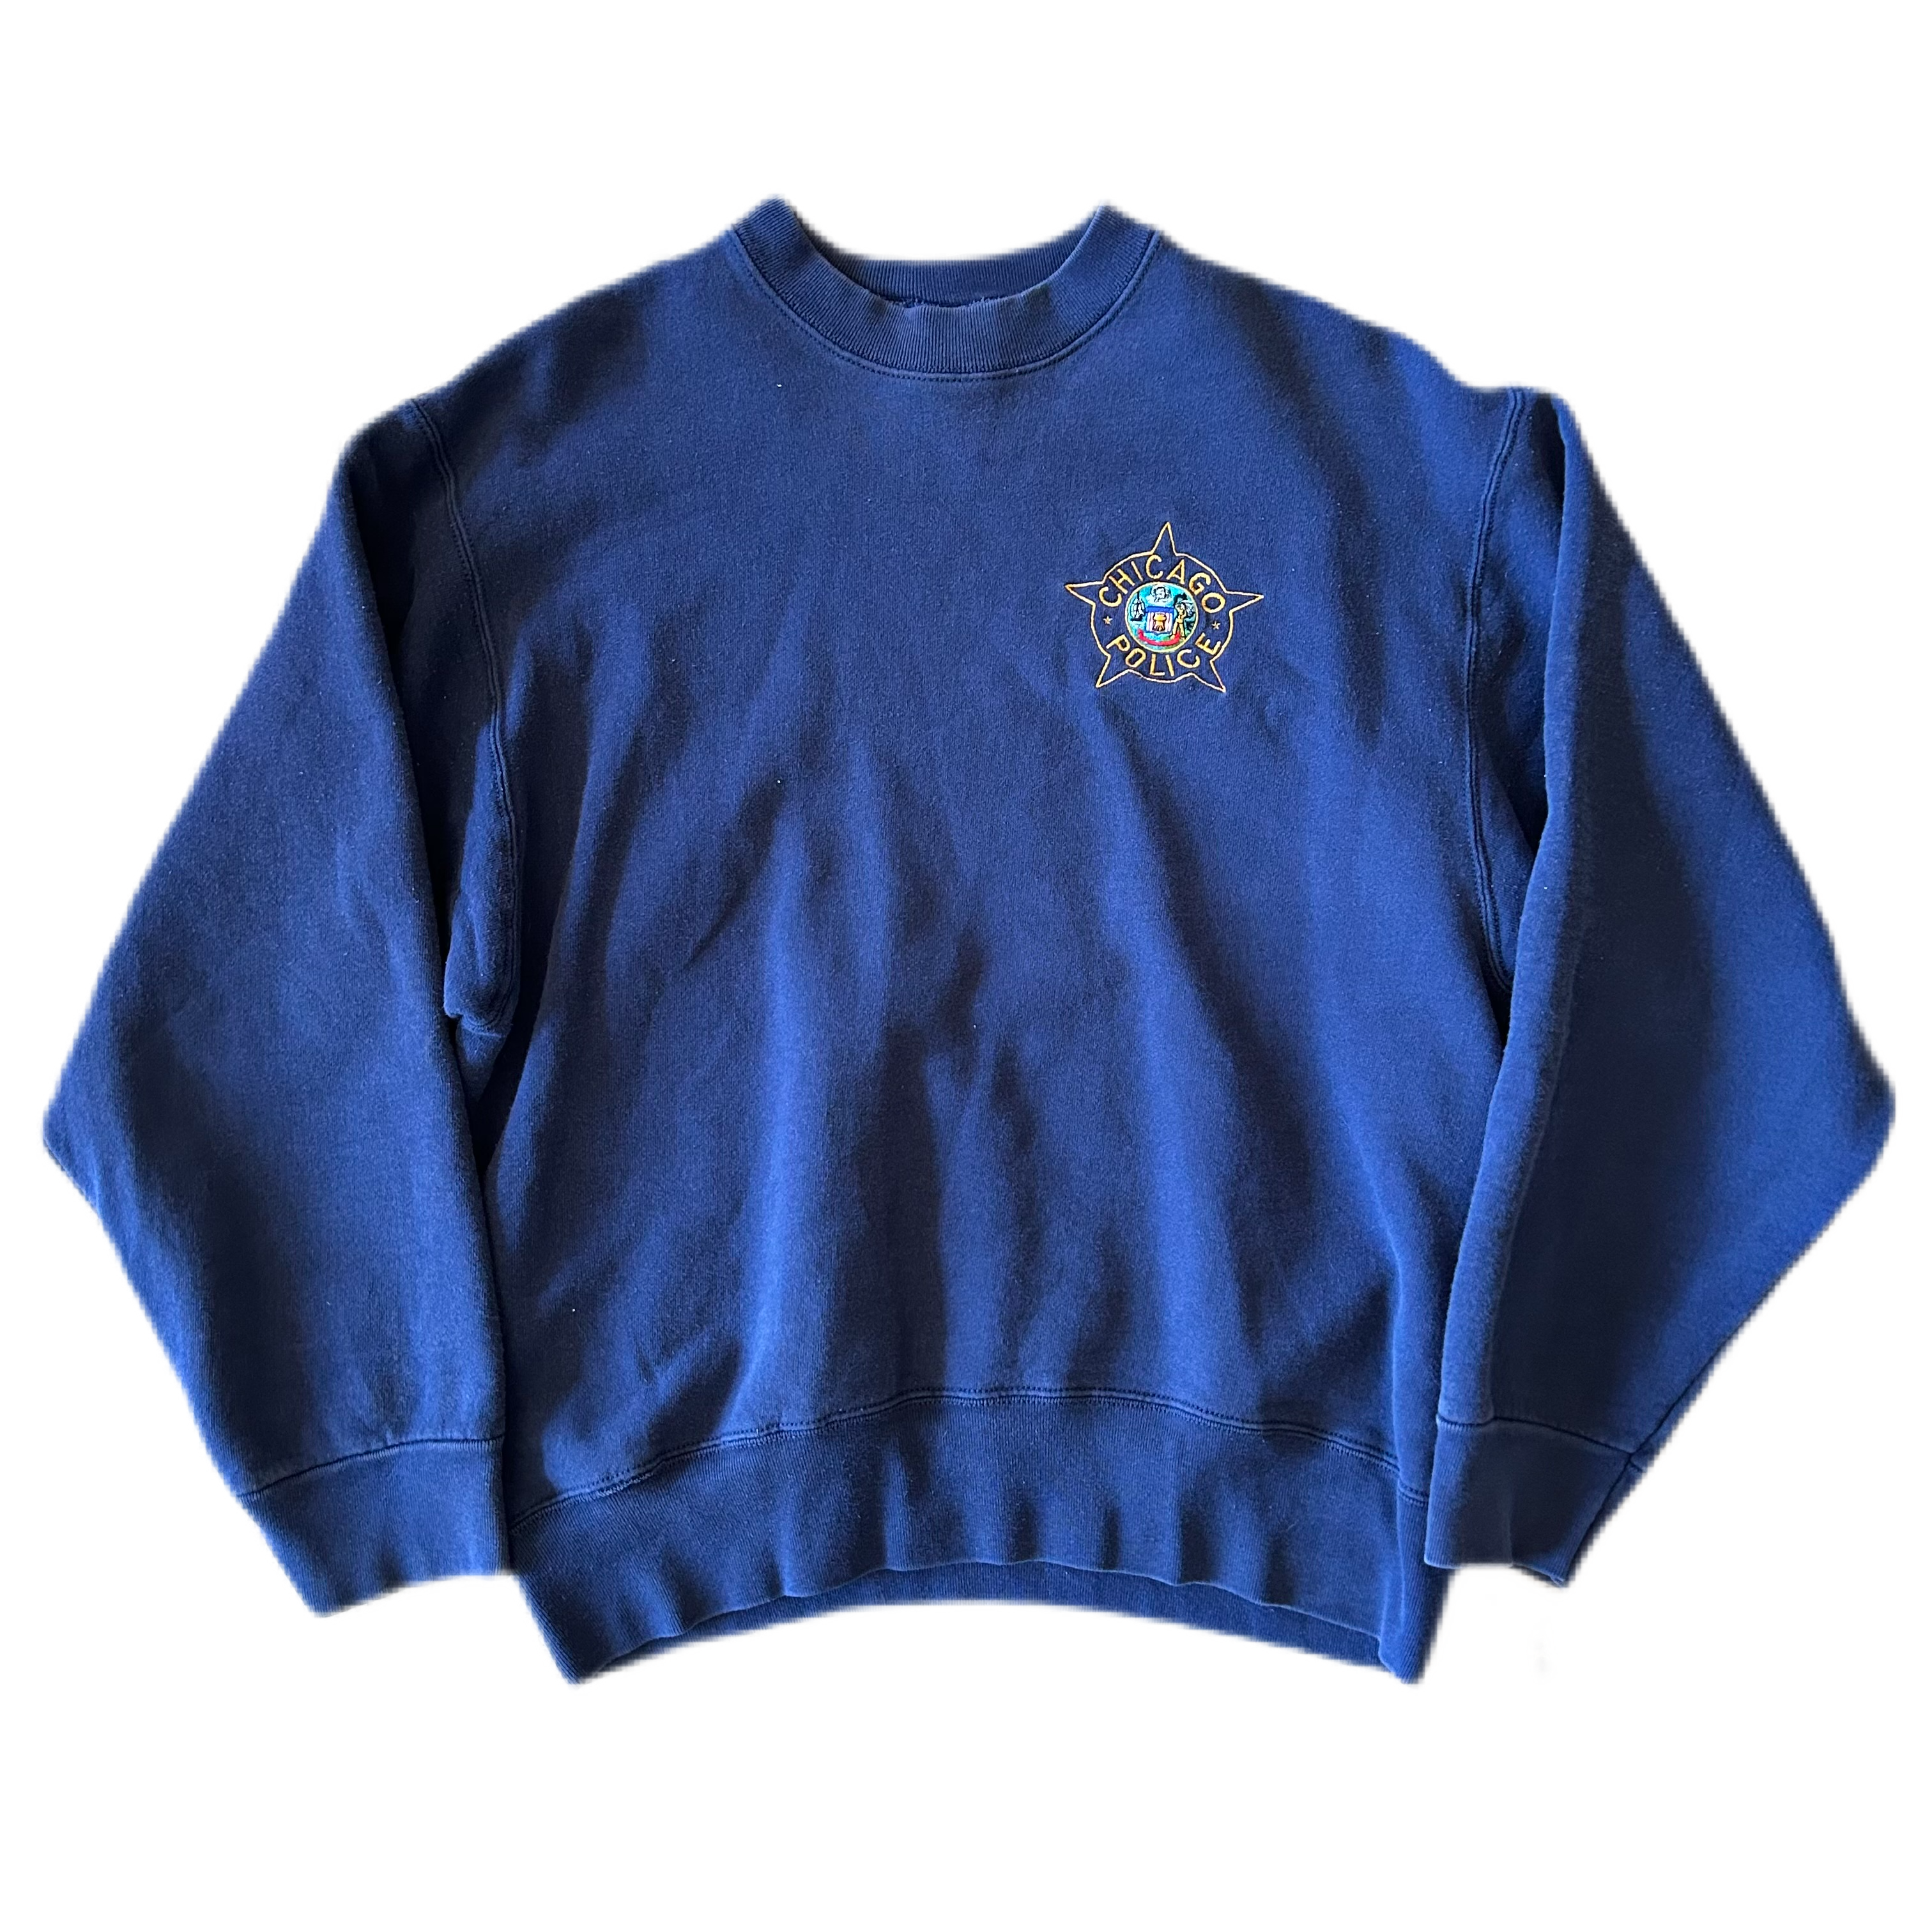 Vintage 2000s Chicago Police Crewneck Sweatshirt